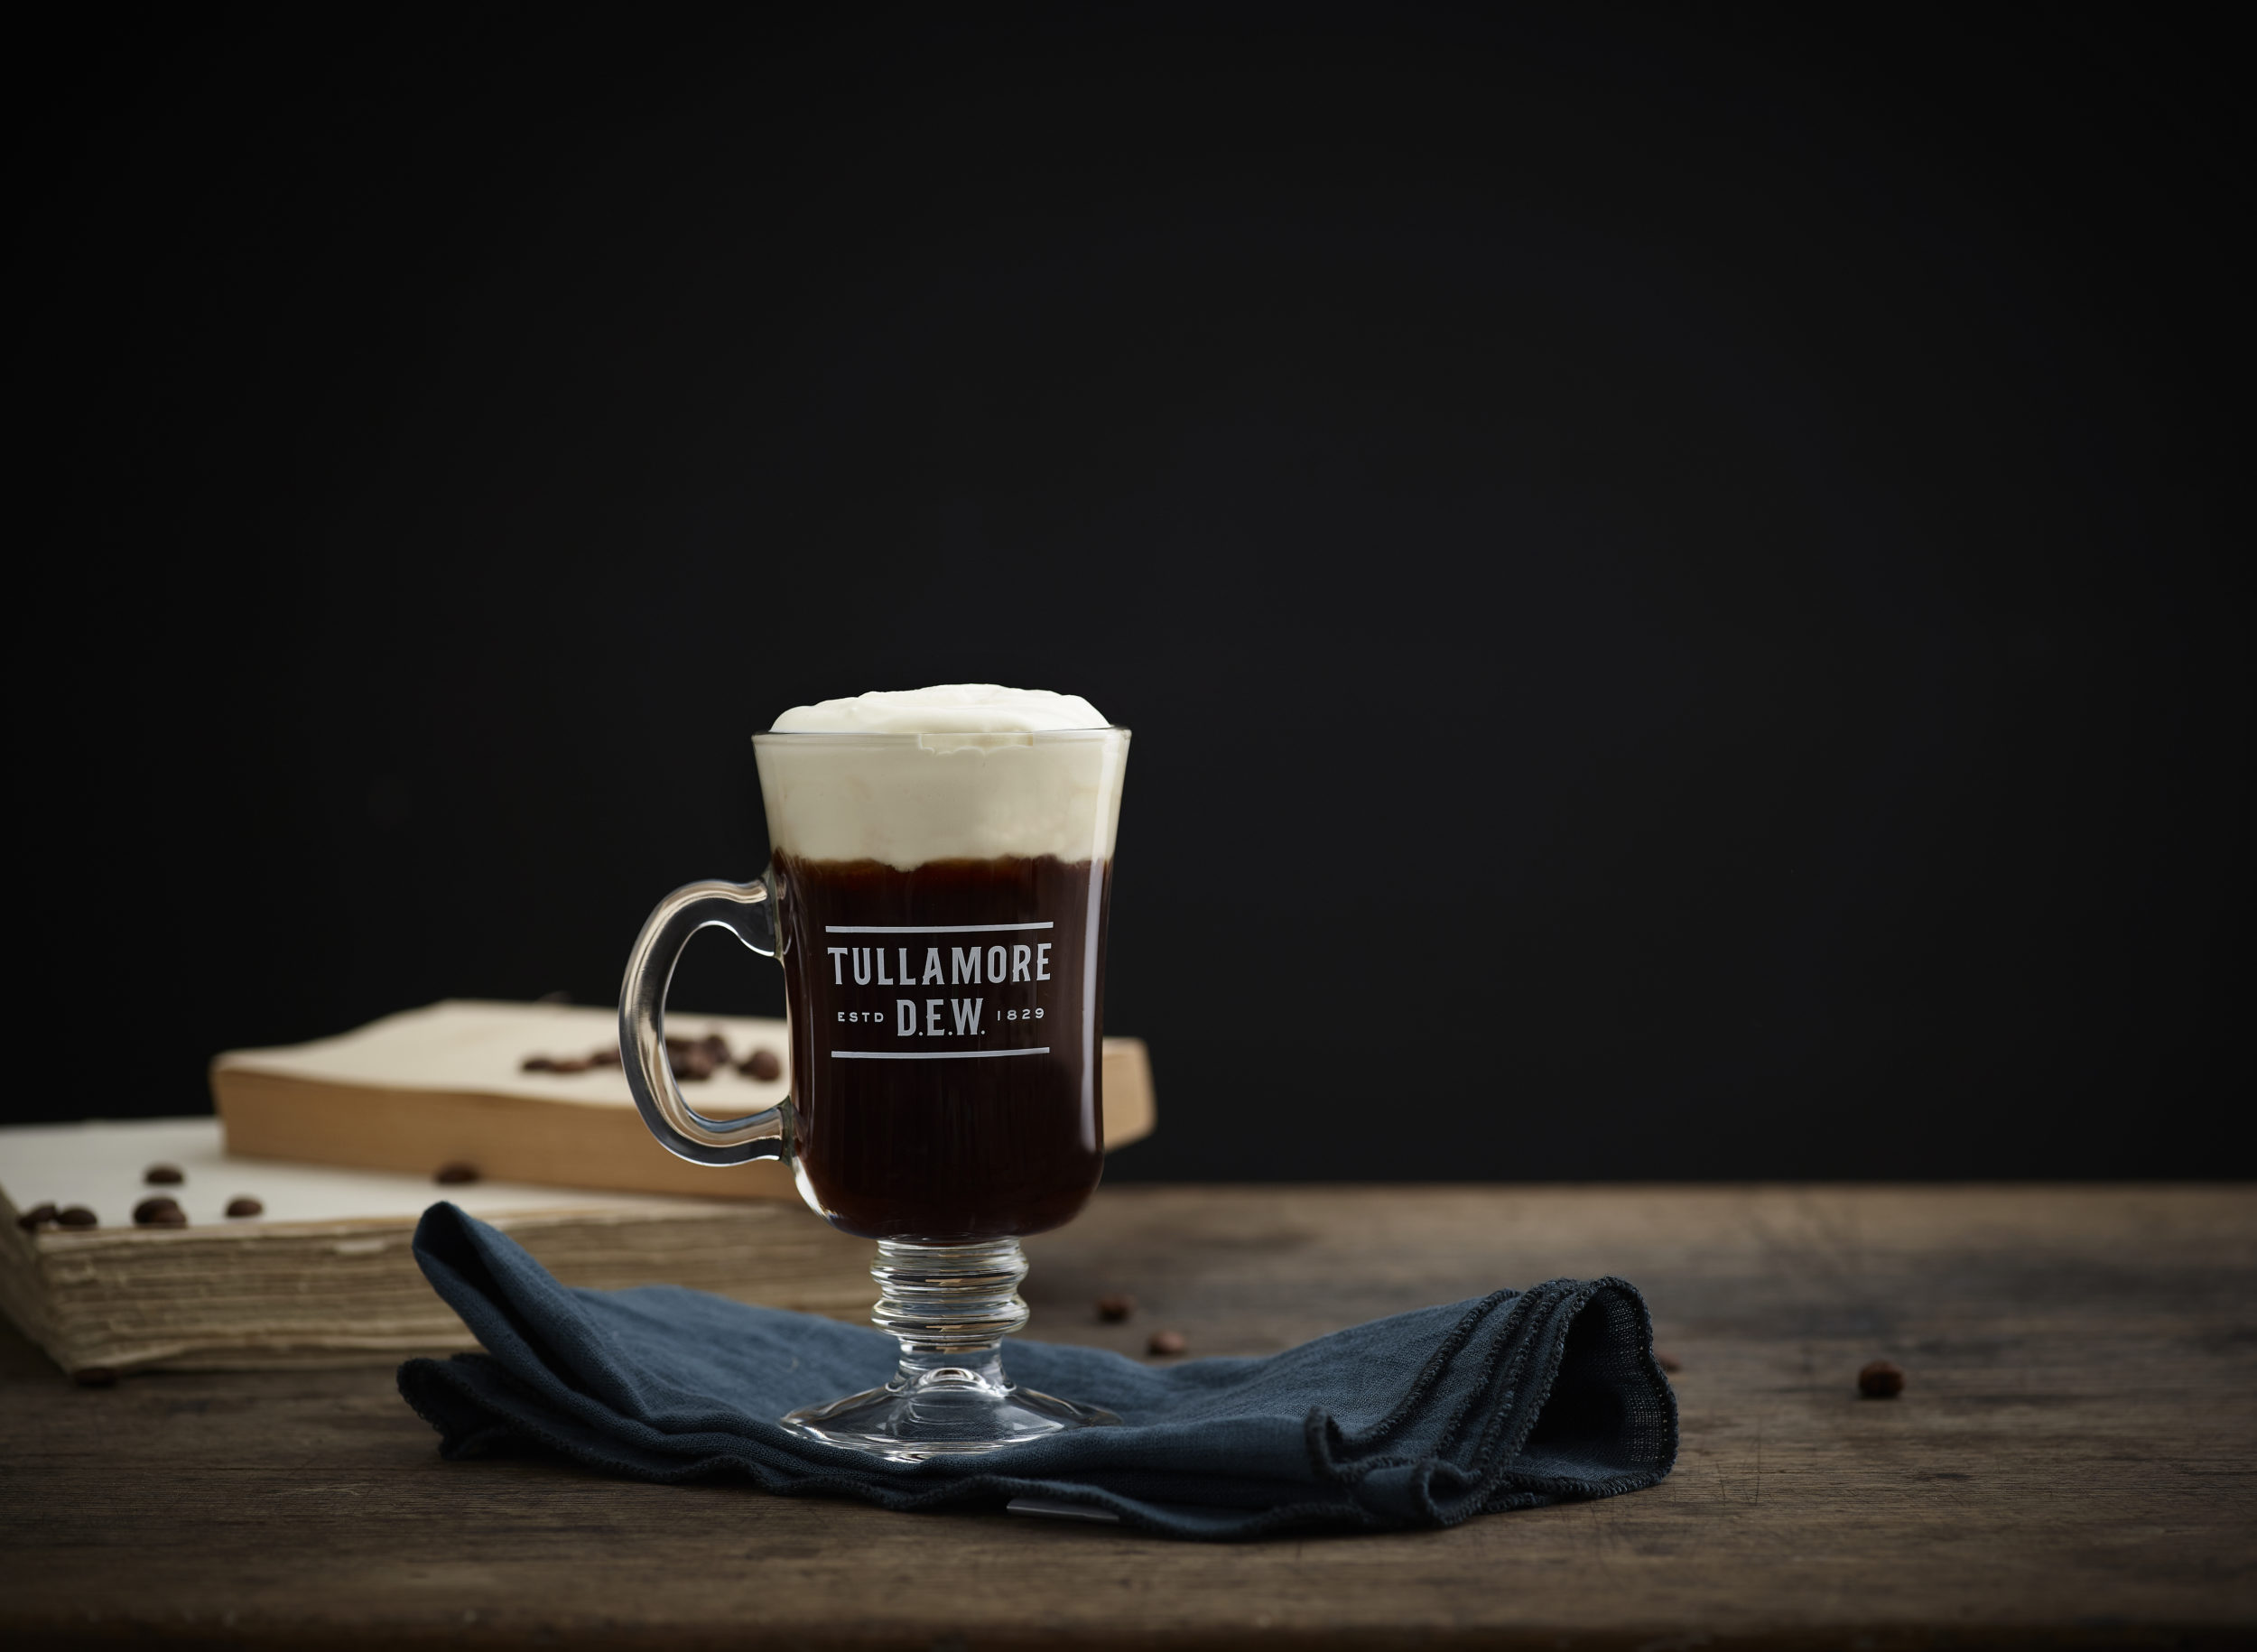 Nyd en gratis Irish Coffee på den lokale i Odense